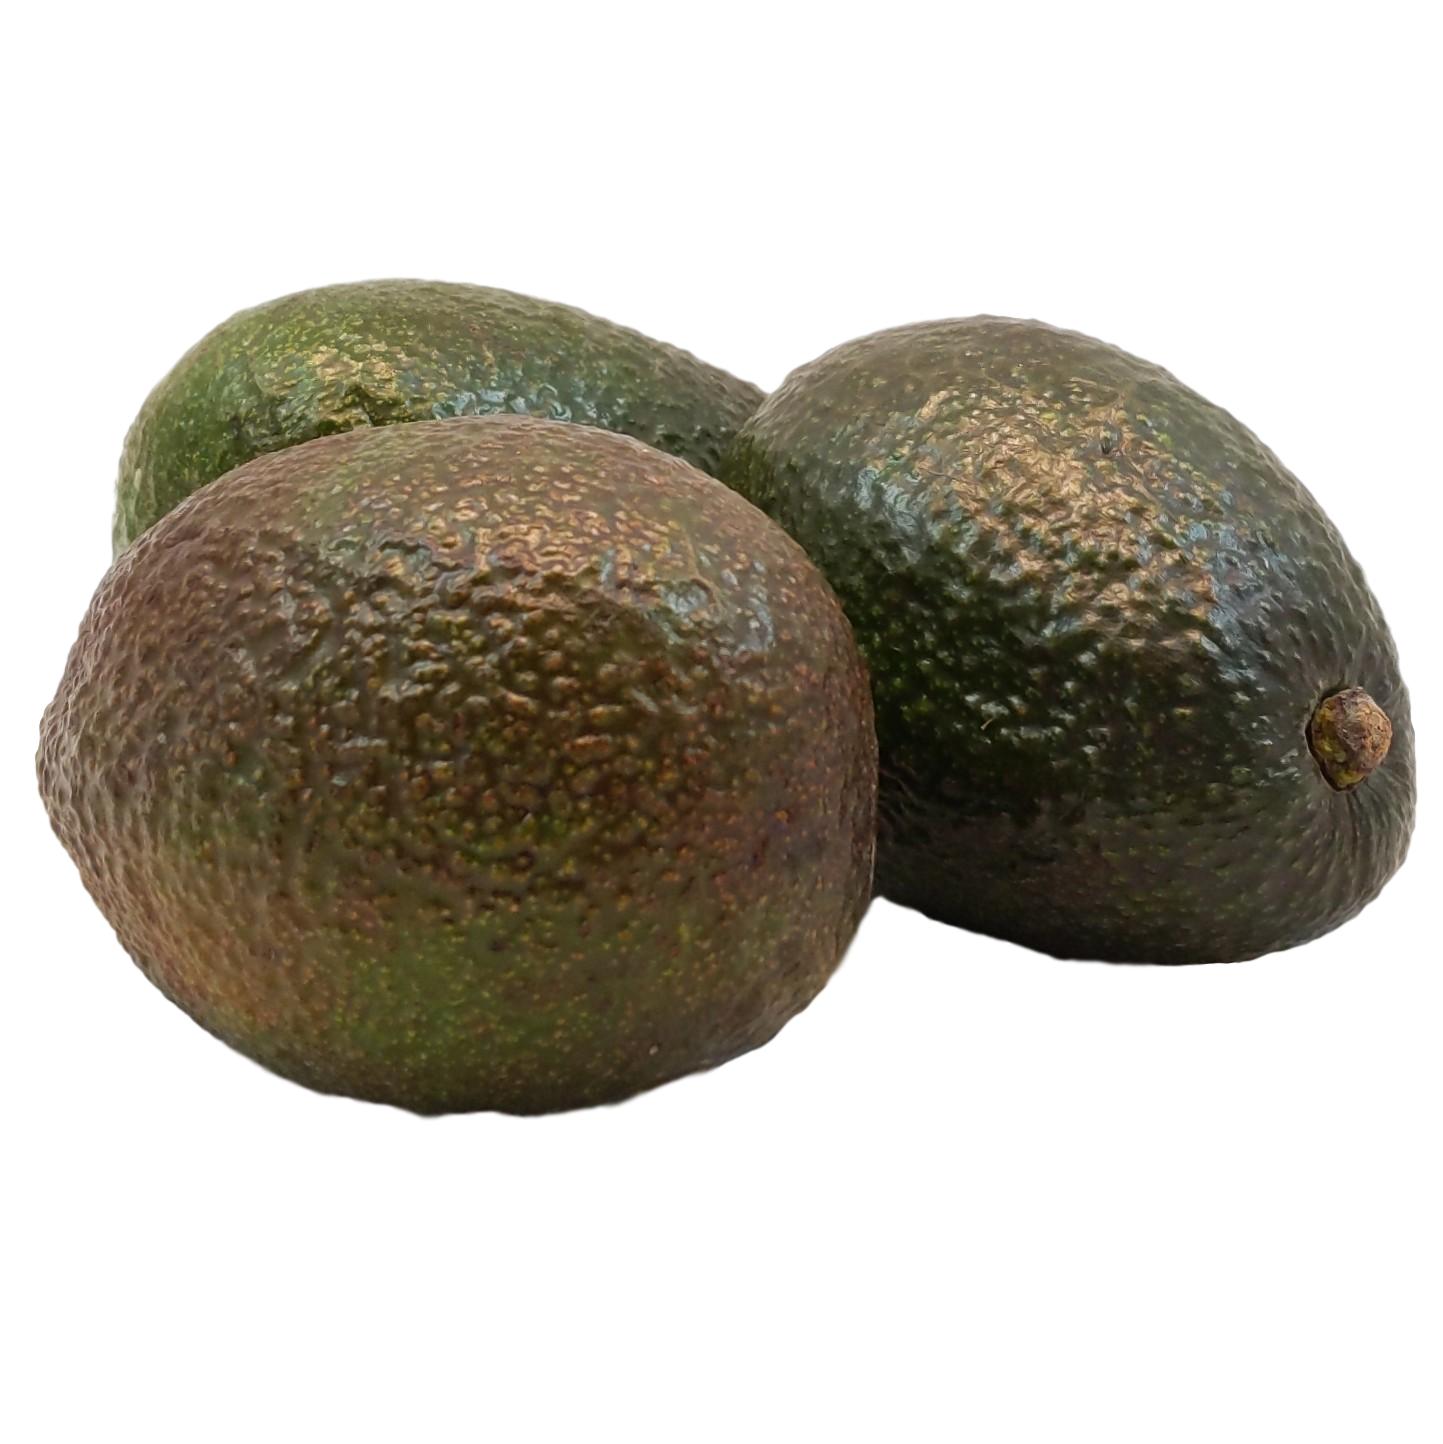 Bio Avocado online kaufen & bestellen » Bio Grauer Shop